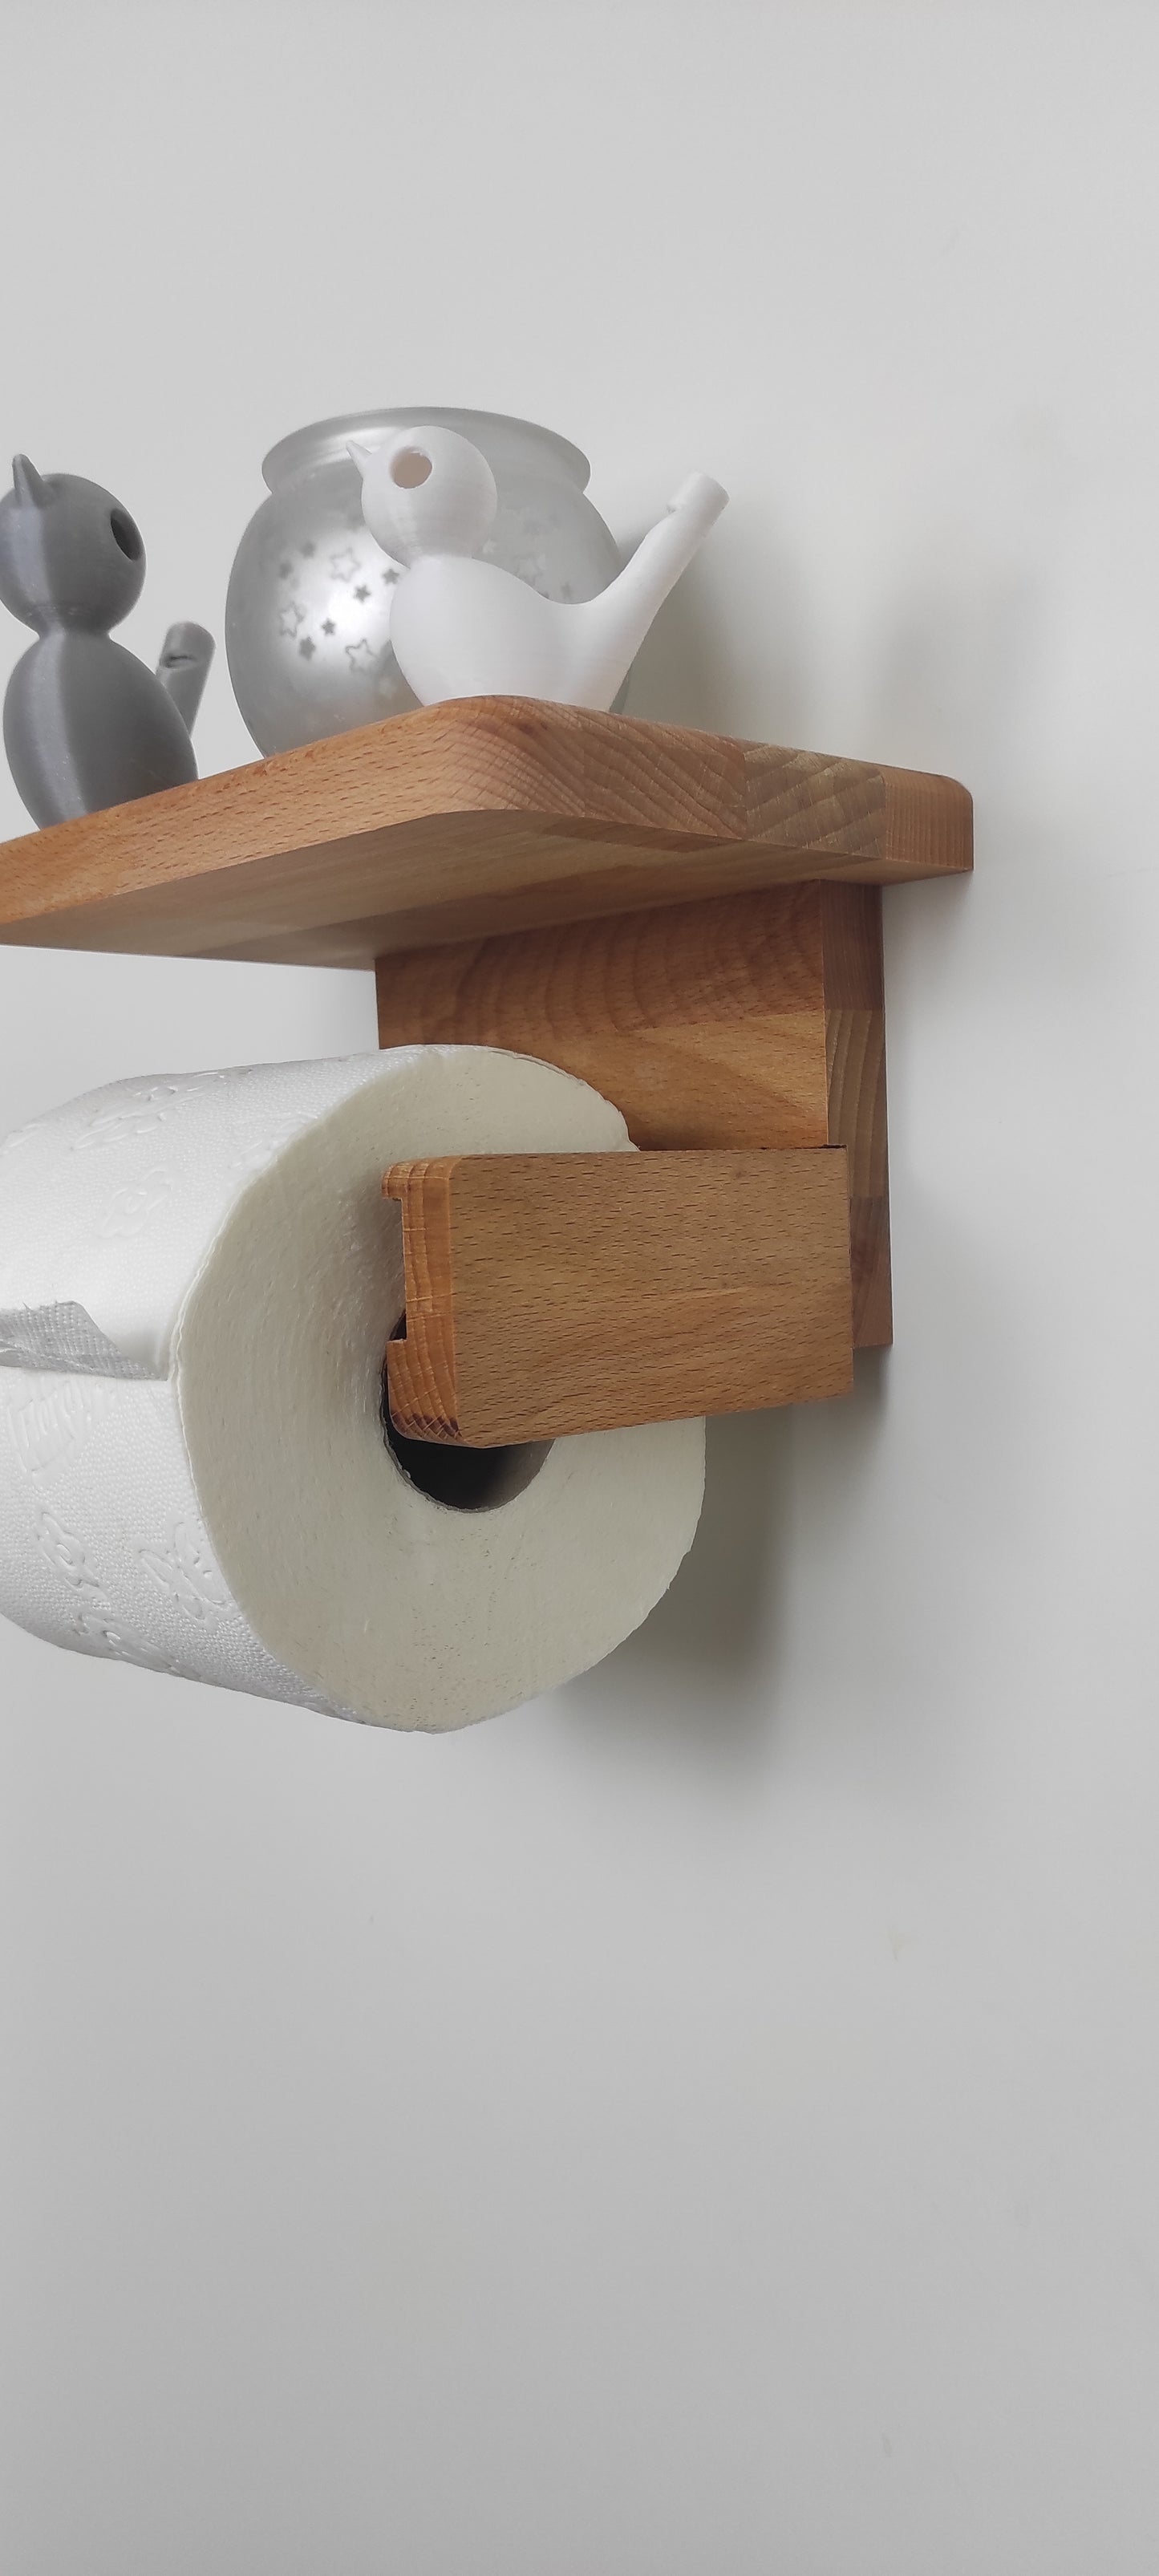 Toiletenpapierhalter mit Ablage aus Massivholz